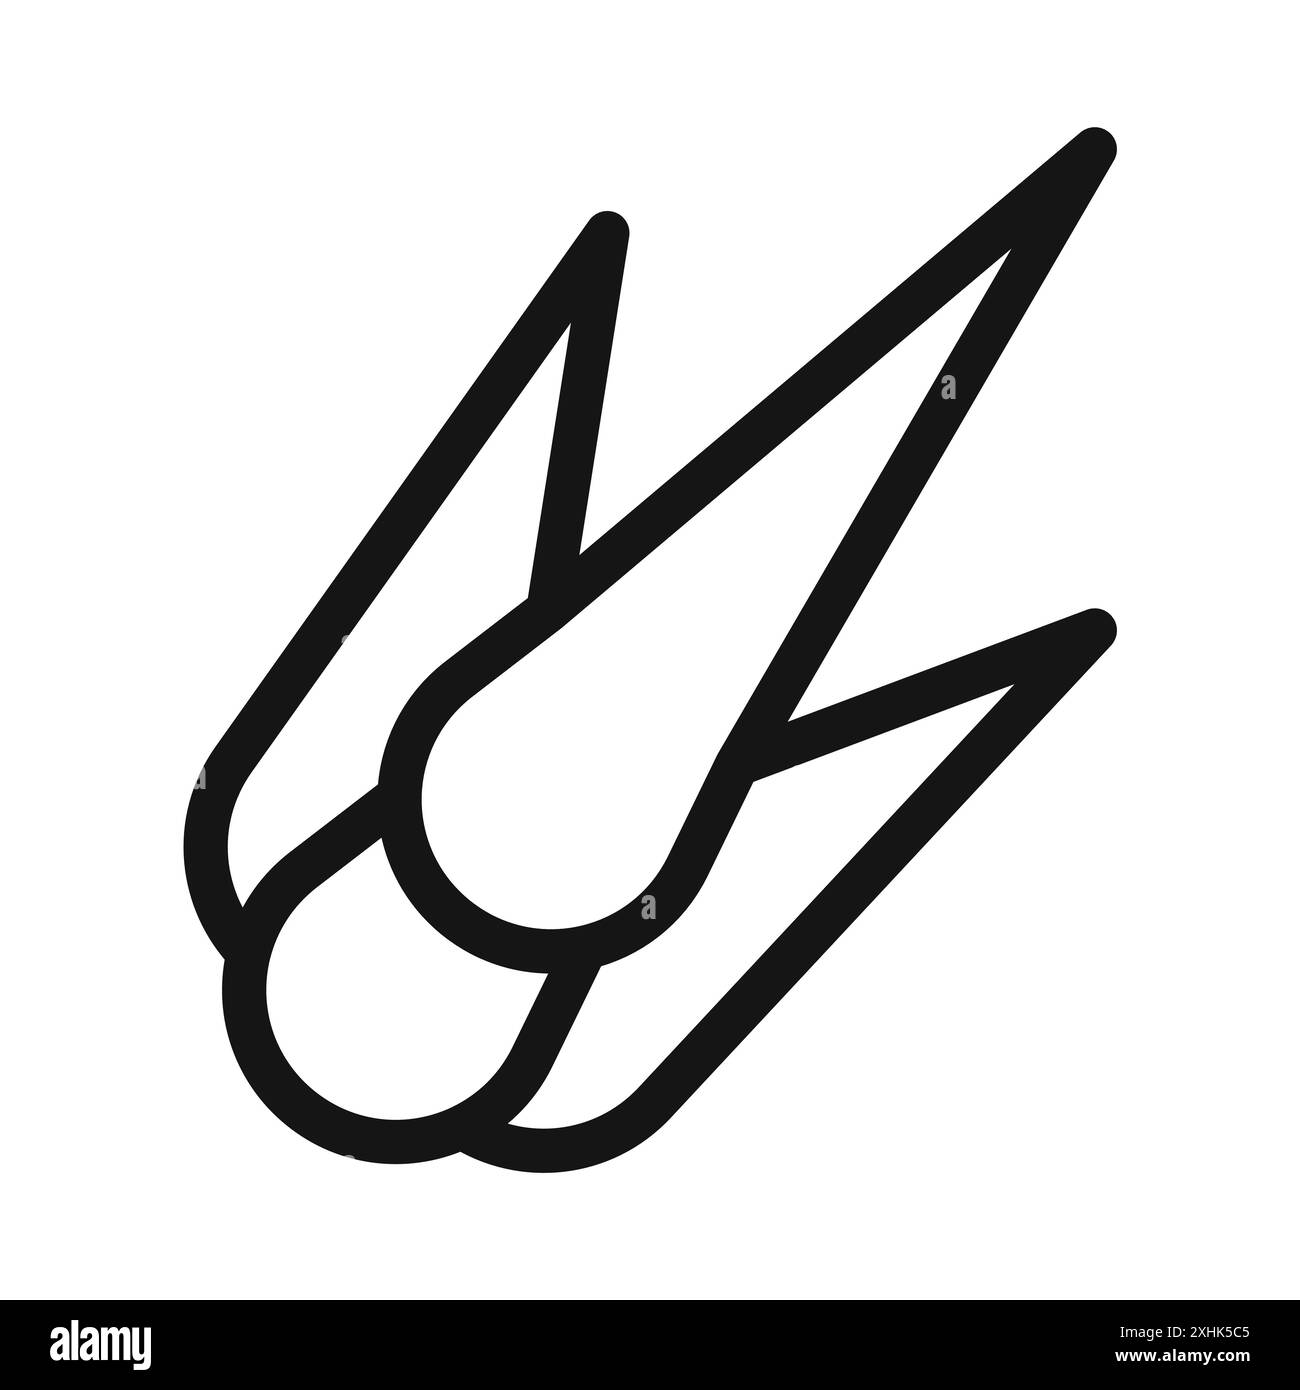 Vecteur d'art de ligne noire d'icône de comète en signe de collection d'ensemble de contour noir et blanc Illustration de Vecteur